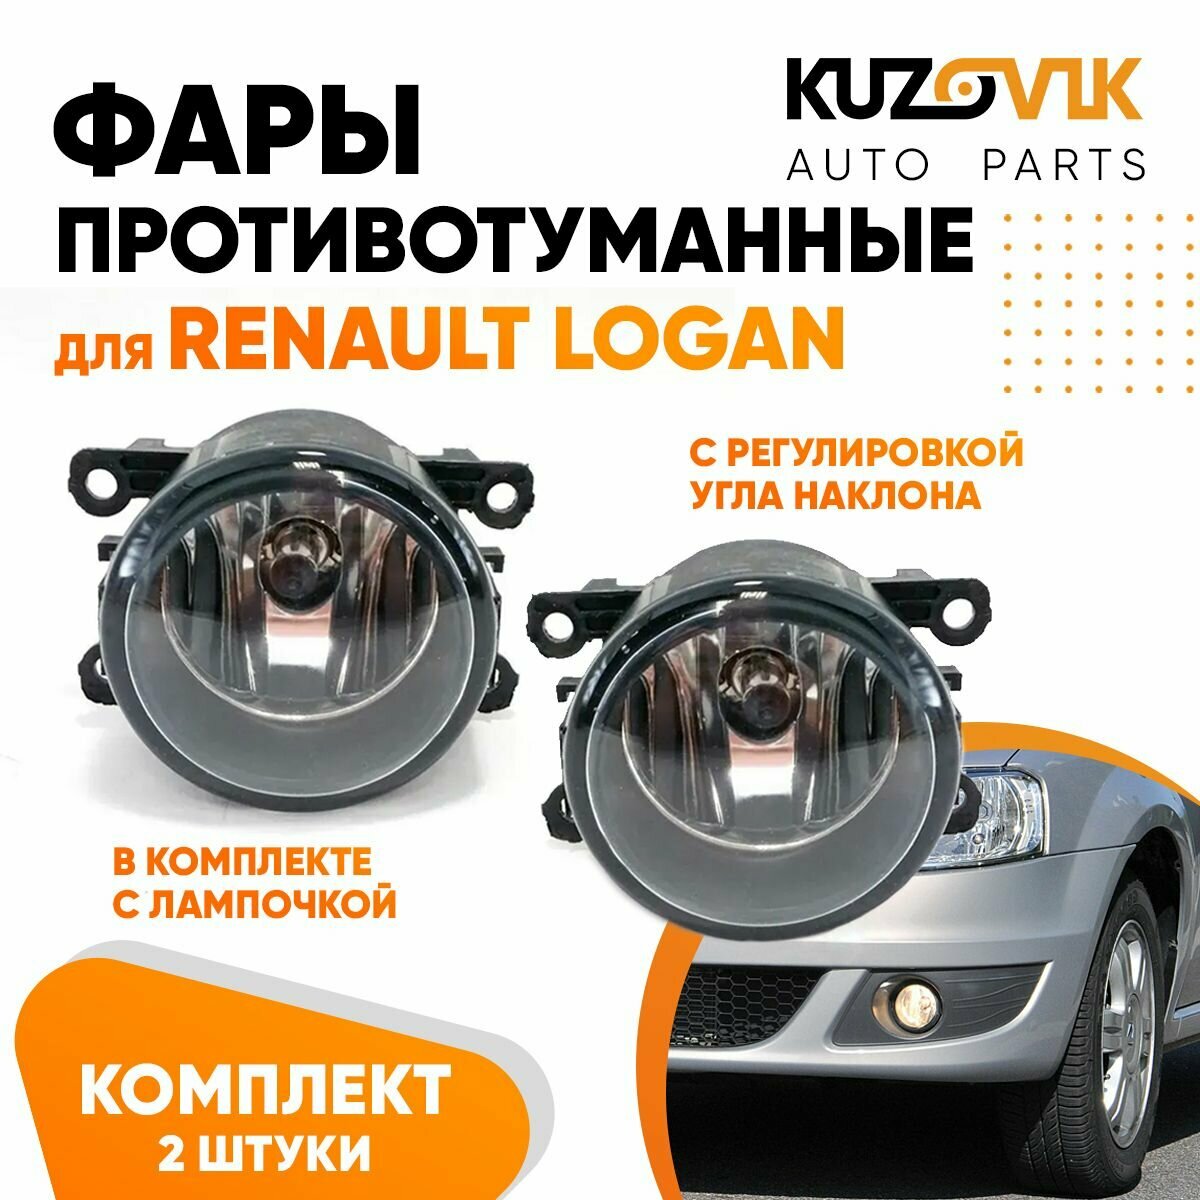 Фары противотуманные для Рено Логан Renault Logan с регулировкой угла наклона и лампочкой комплект 2 штуки левая /правая, туманка, птф